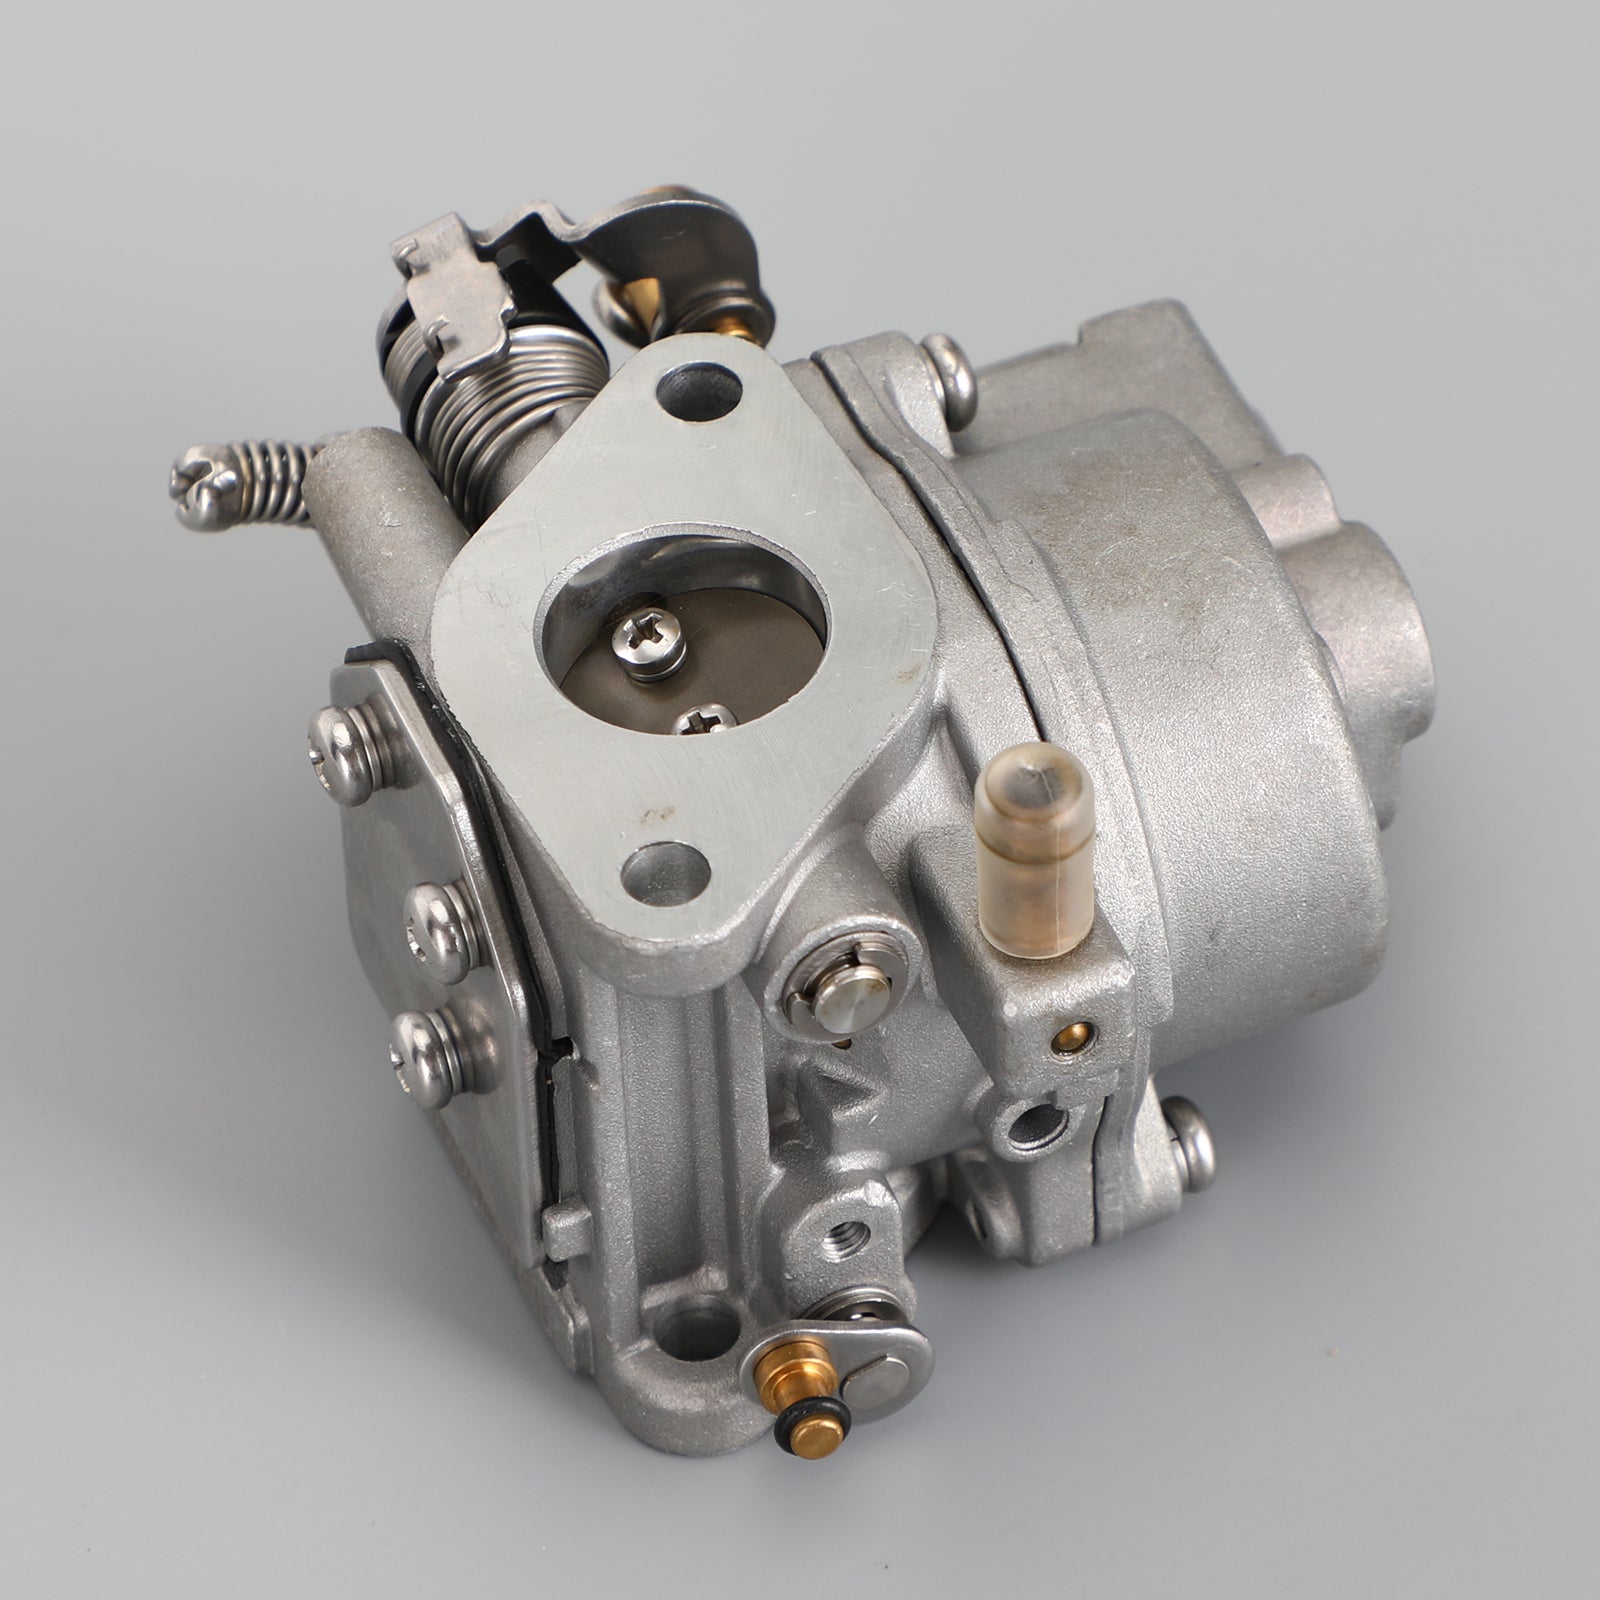 Motor fueraborda Yamaha Hidea F 9,9 Hp 4T 6AU-14301-40 41 para carburador